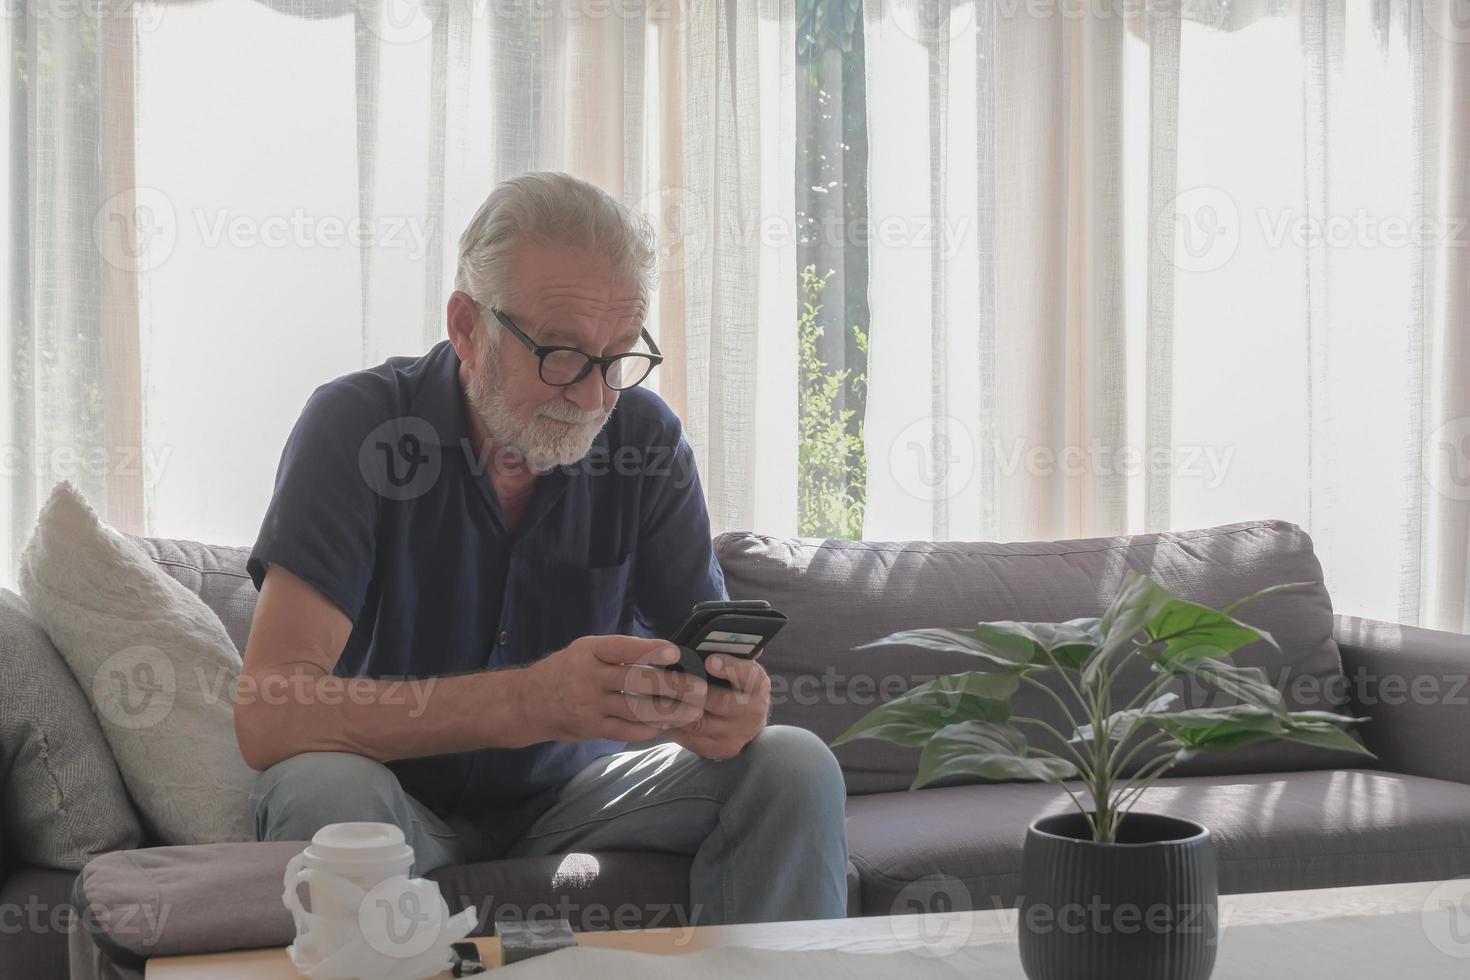 lifestyle fotografie van blanke oude man die alleen woont in vakantie, met behulp van smartphone, sigaret en koffiekopje op tafel gezet in woonkamer gezellig huis en zonnige dag. foto